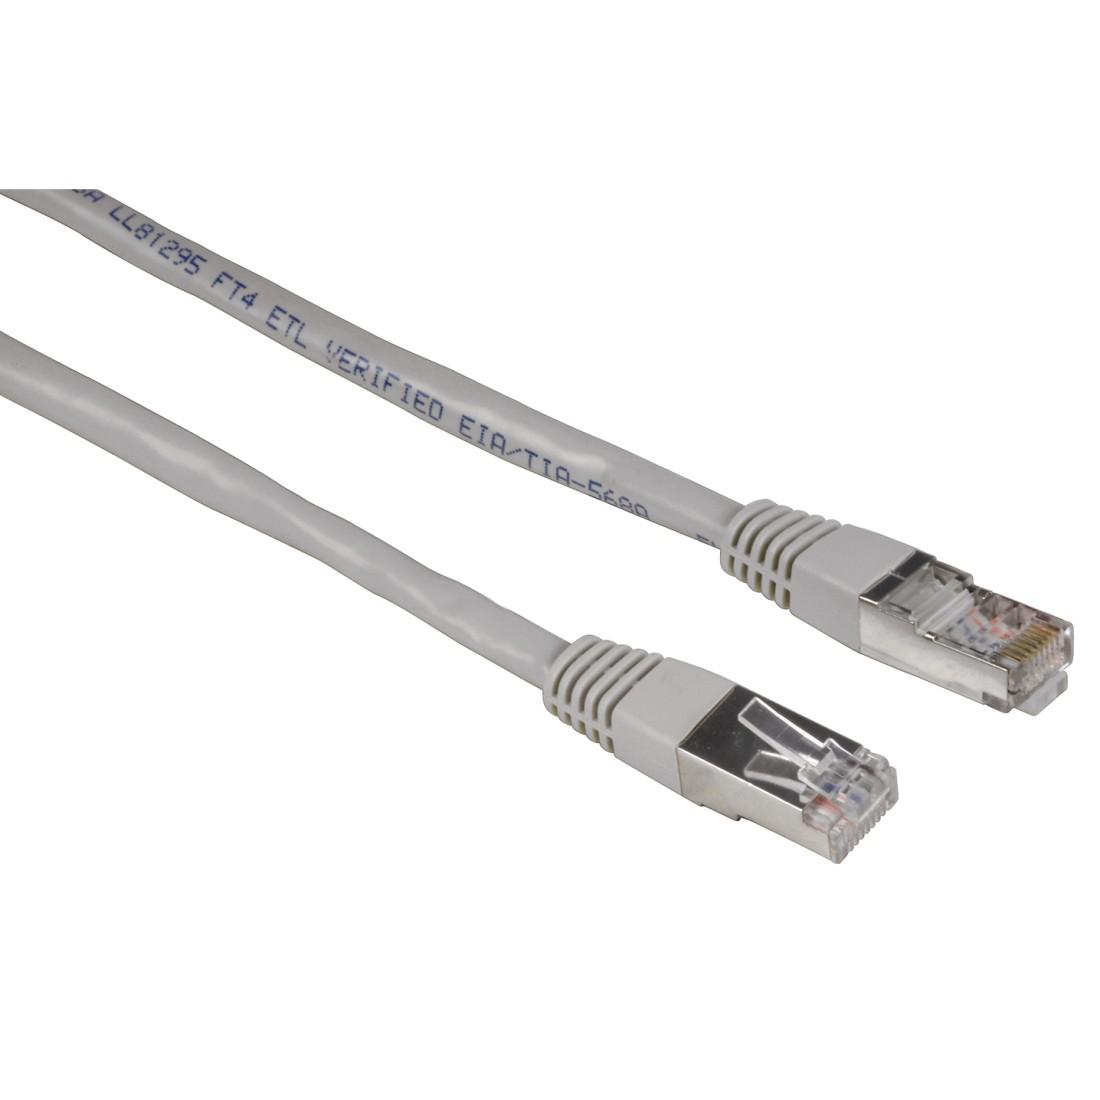 Мрежов кабел HAMA, 30592, CAT 5e, STP, RJ-45 - RJ-45, 3 m, Standard, Сив, булк опаковка